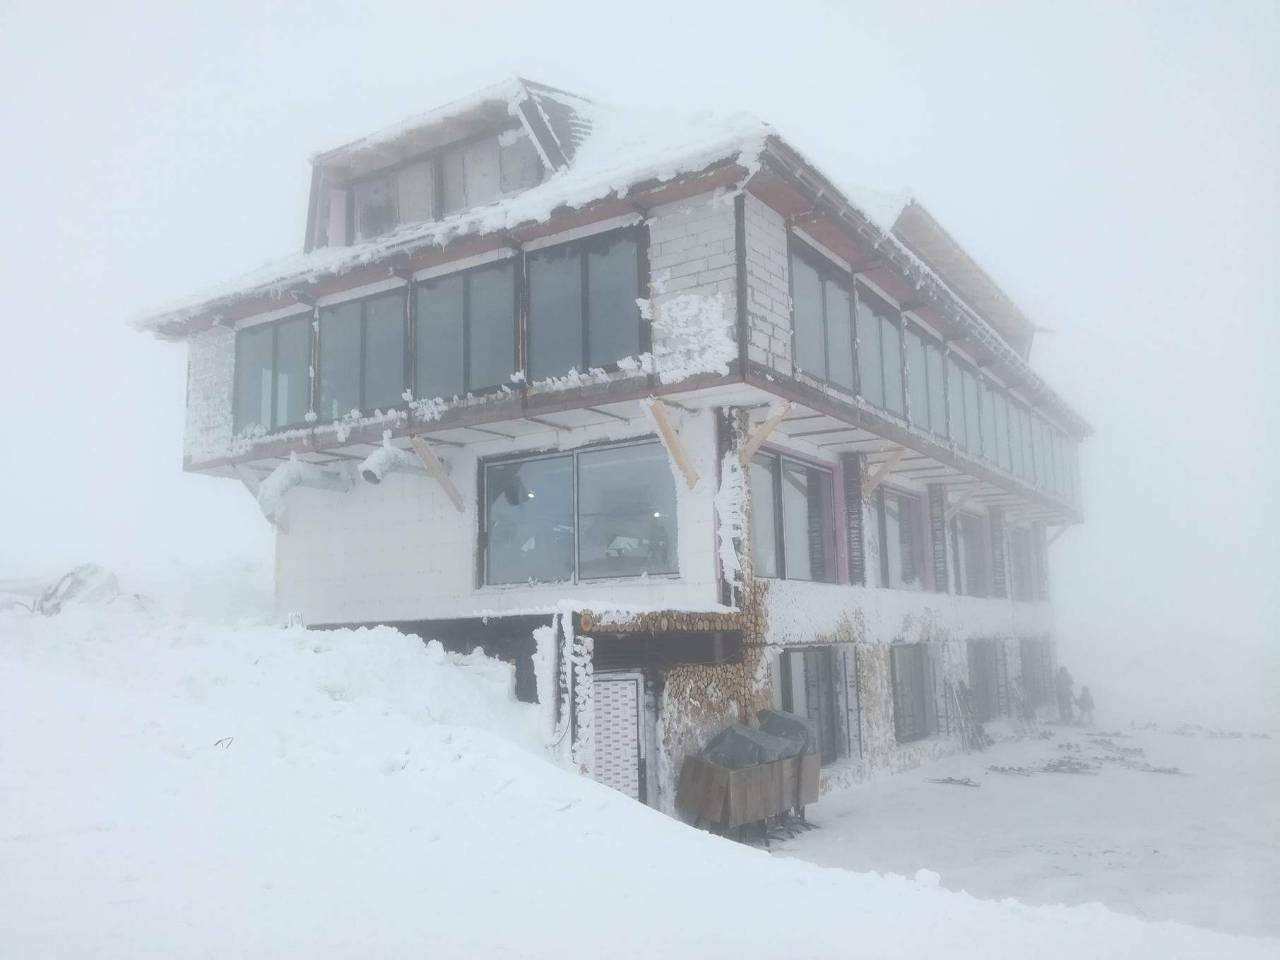 Objekat na Pančićevom vrhu snimljen danas - ispred objekta su brojne skije posetioca restorana